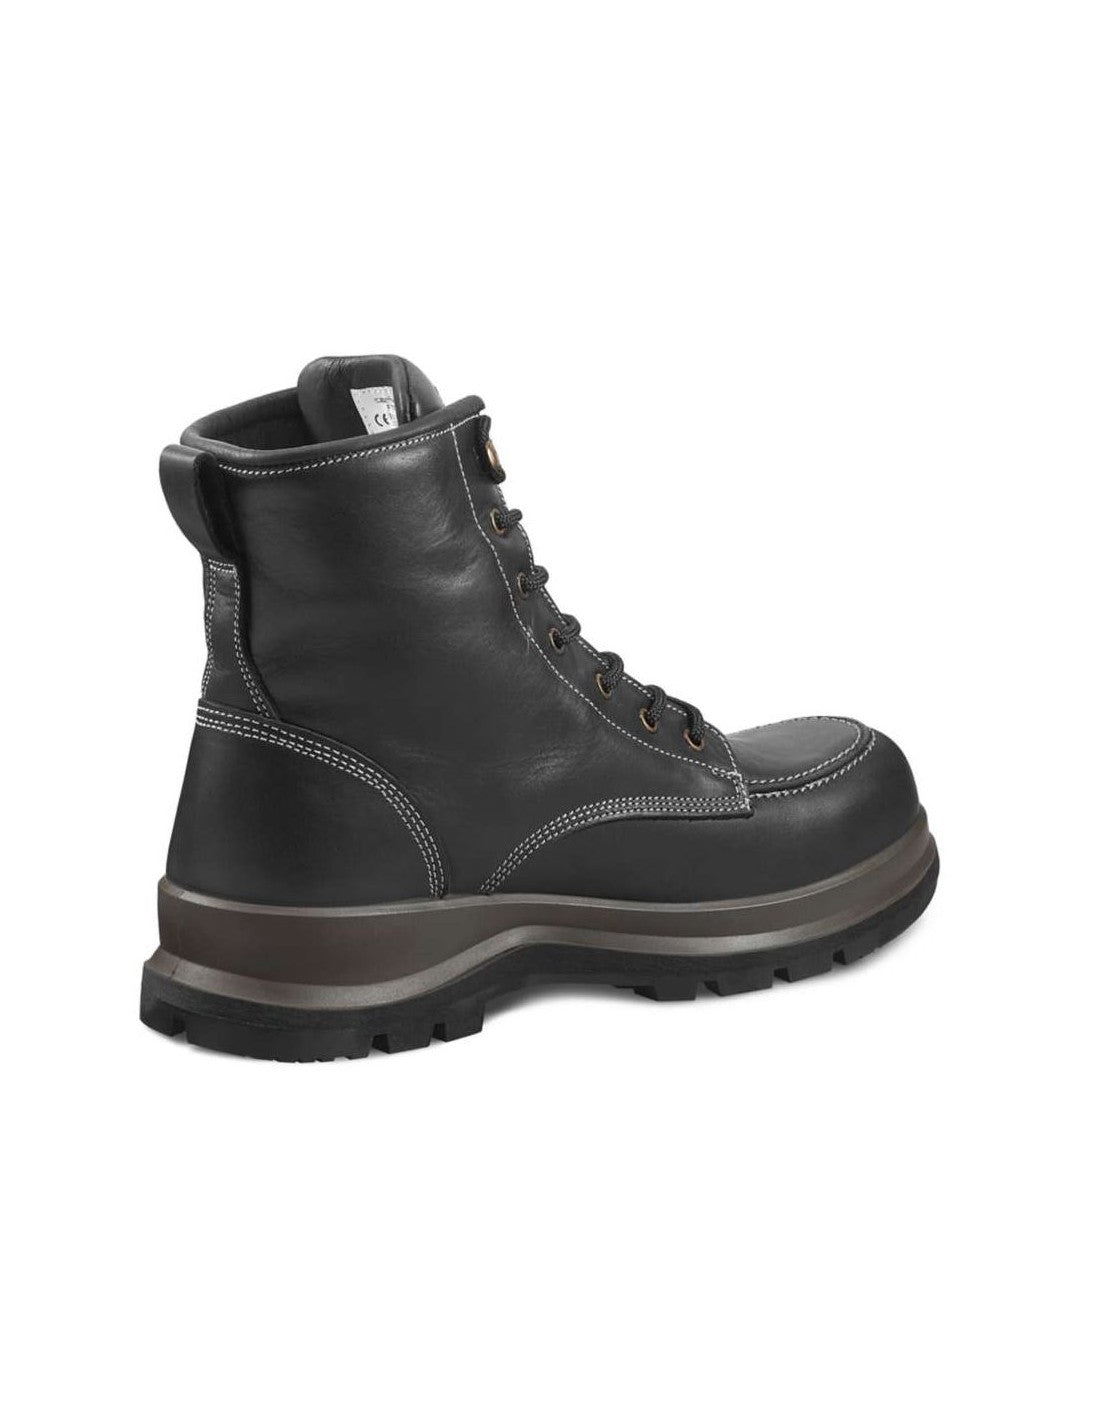 black wedge waterproof boots